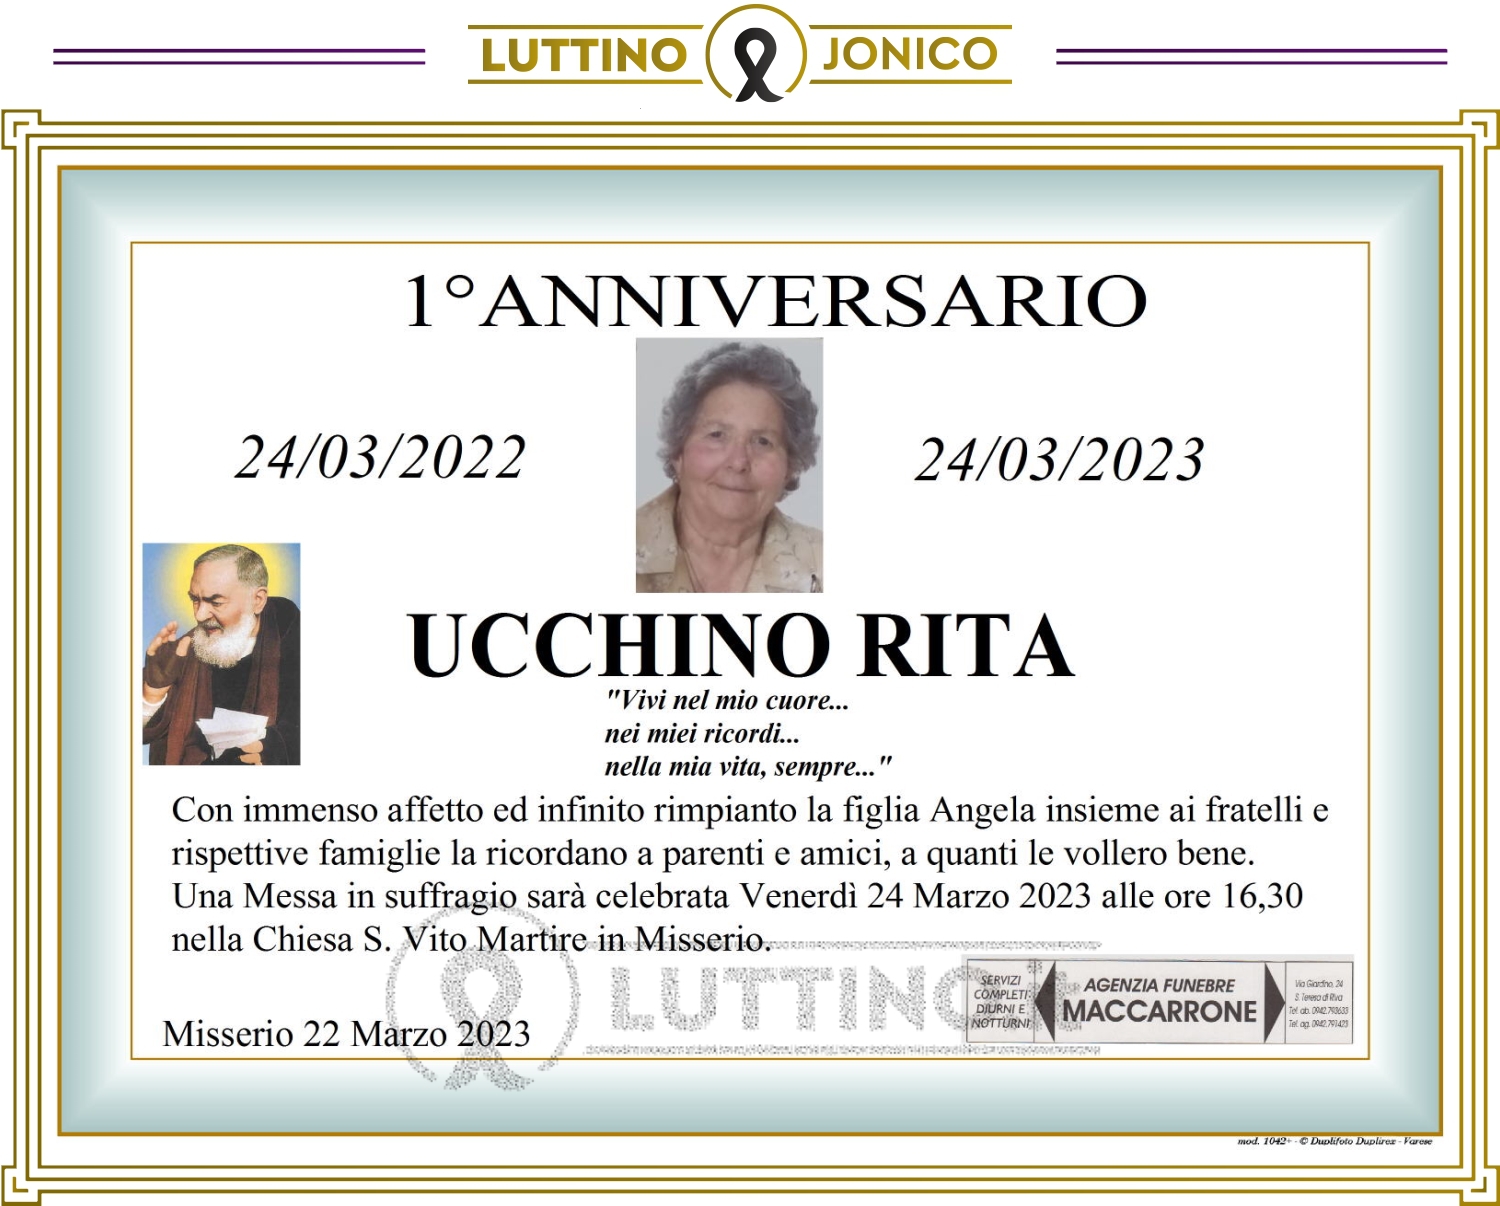 Rita Ucchino